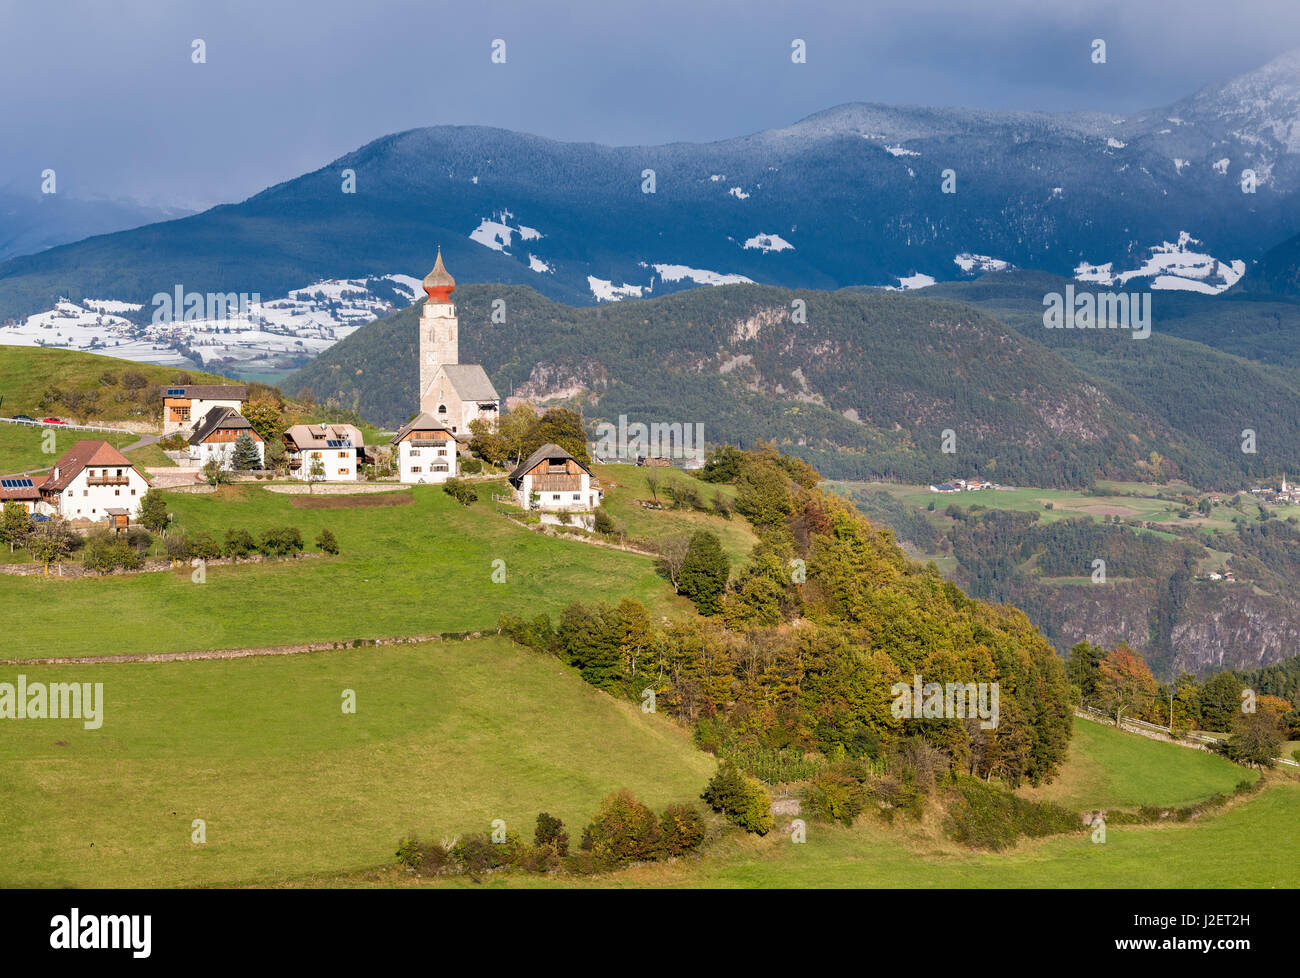 Das Dorf von Mittelberg (Monte di Mezzo) auf Mt. Ritten (Renon) in der Nähe von Bozen (Bolzano). Mitteleuropa, Südtirol, Italien (großformatige Größen erhältlich) Stockfoto